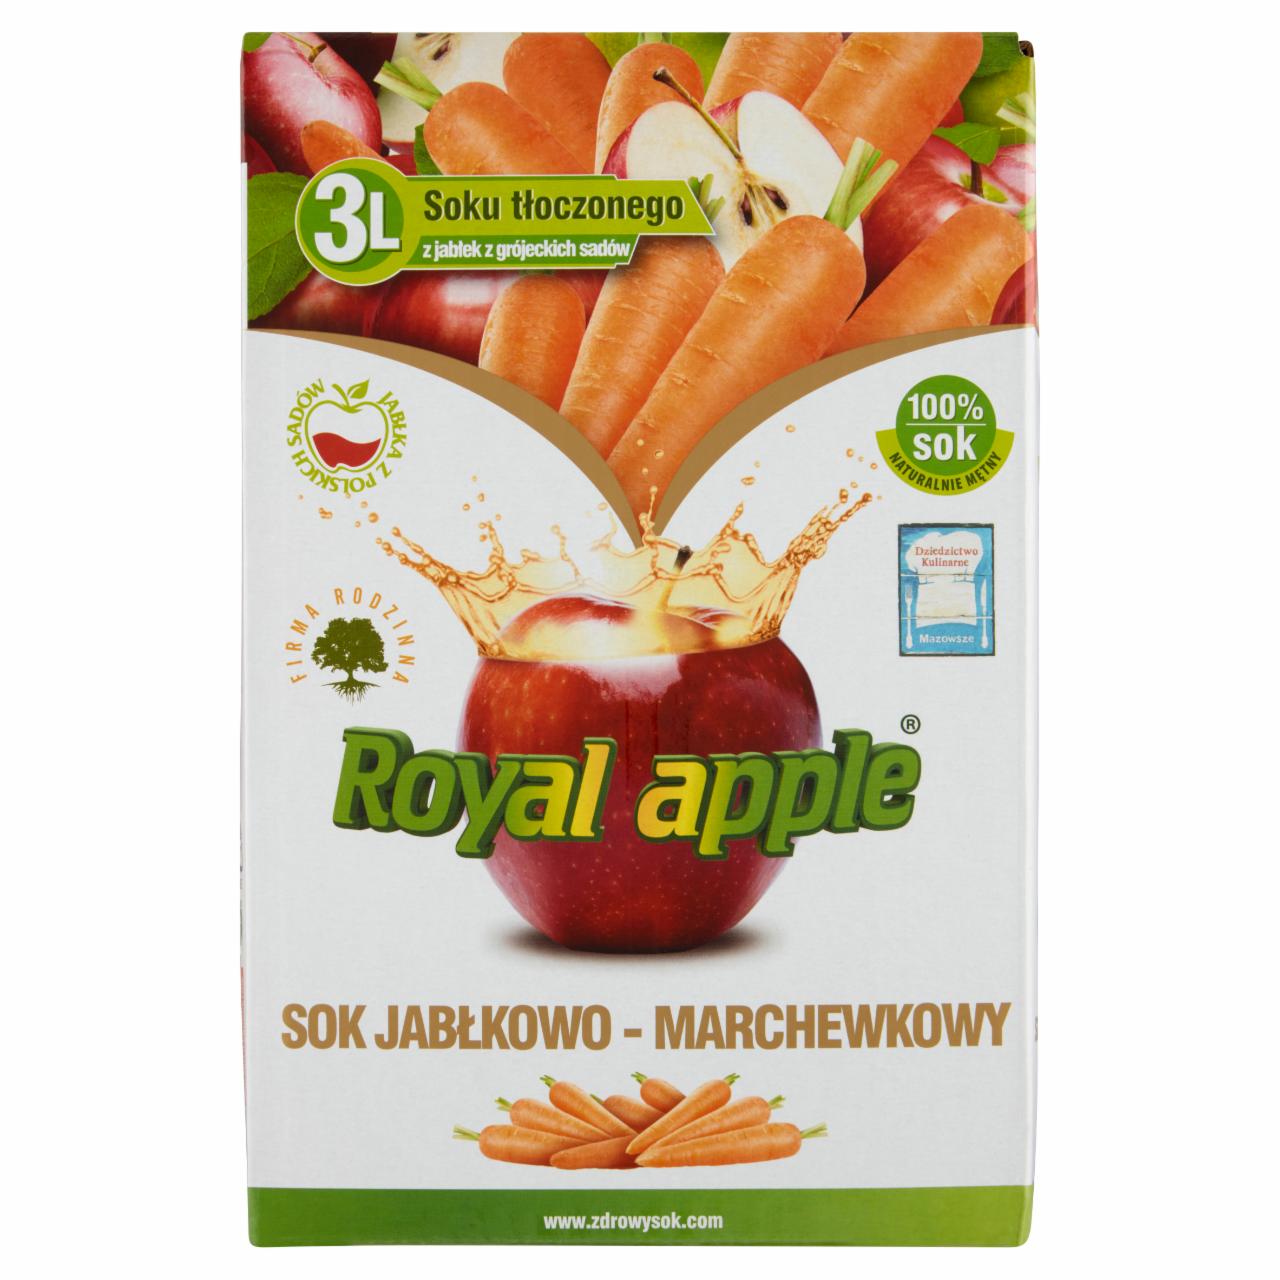 Zdjęcia - Royal apple Sok jabłkowo-marchewkowy 3 l